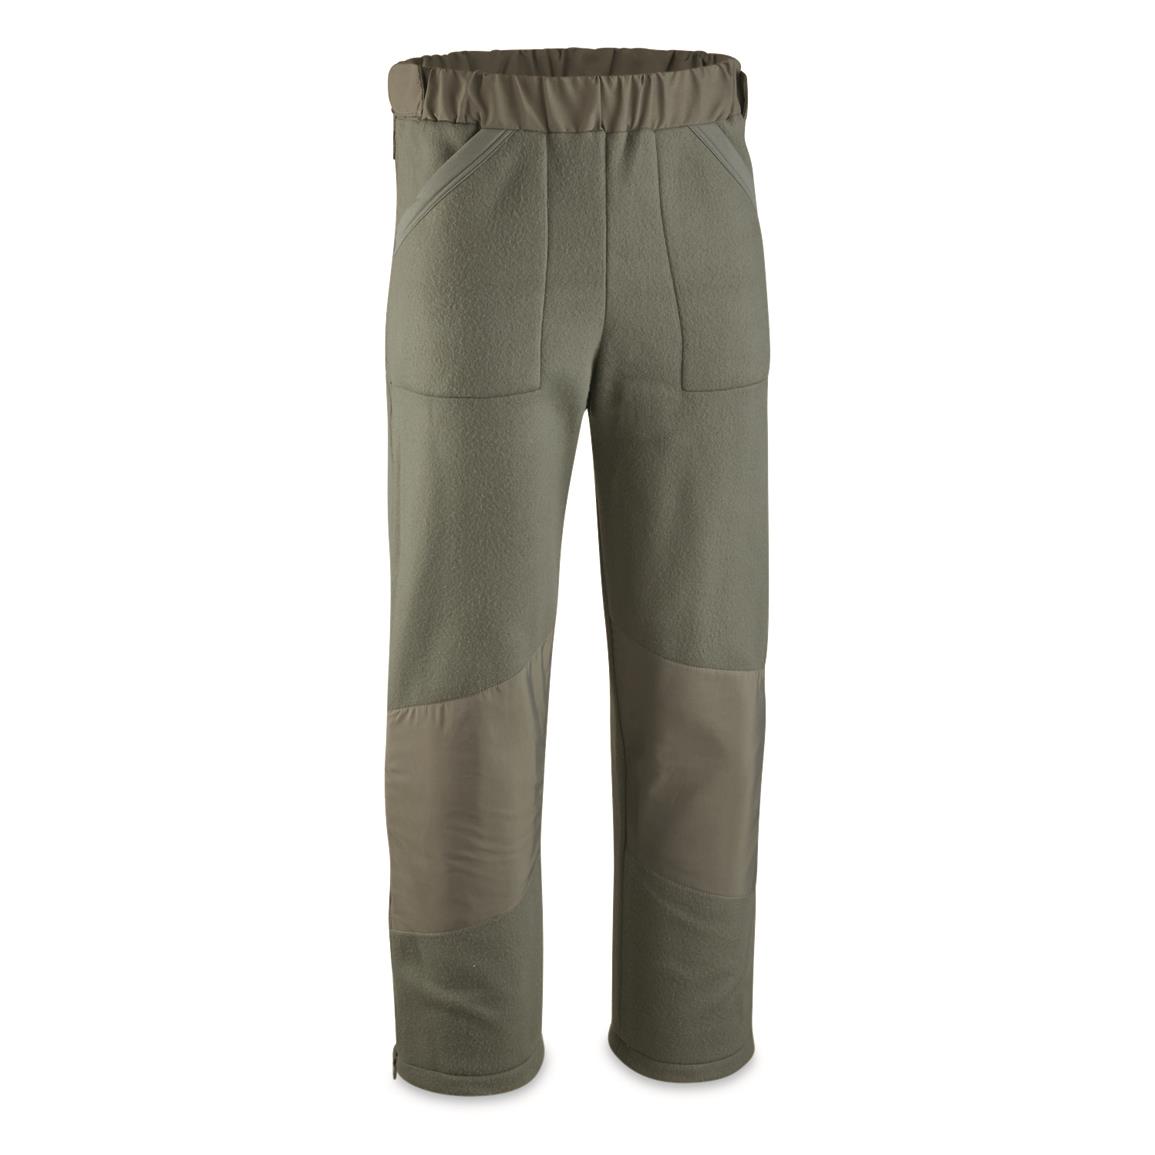 U.S. Military Surplus ECWCS Fleece Liner Pants with Side Zip, New, Coyote